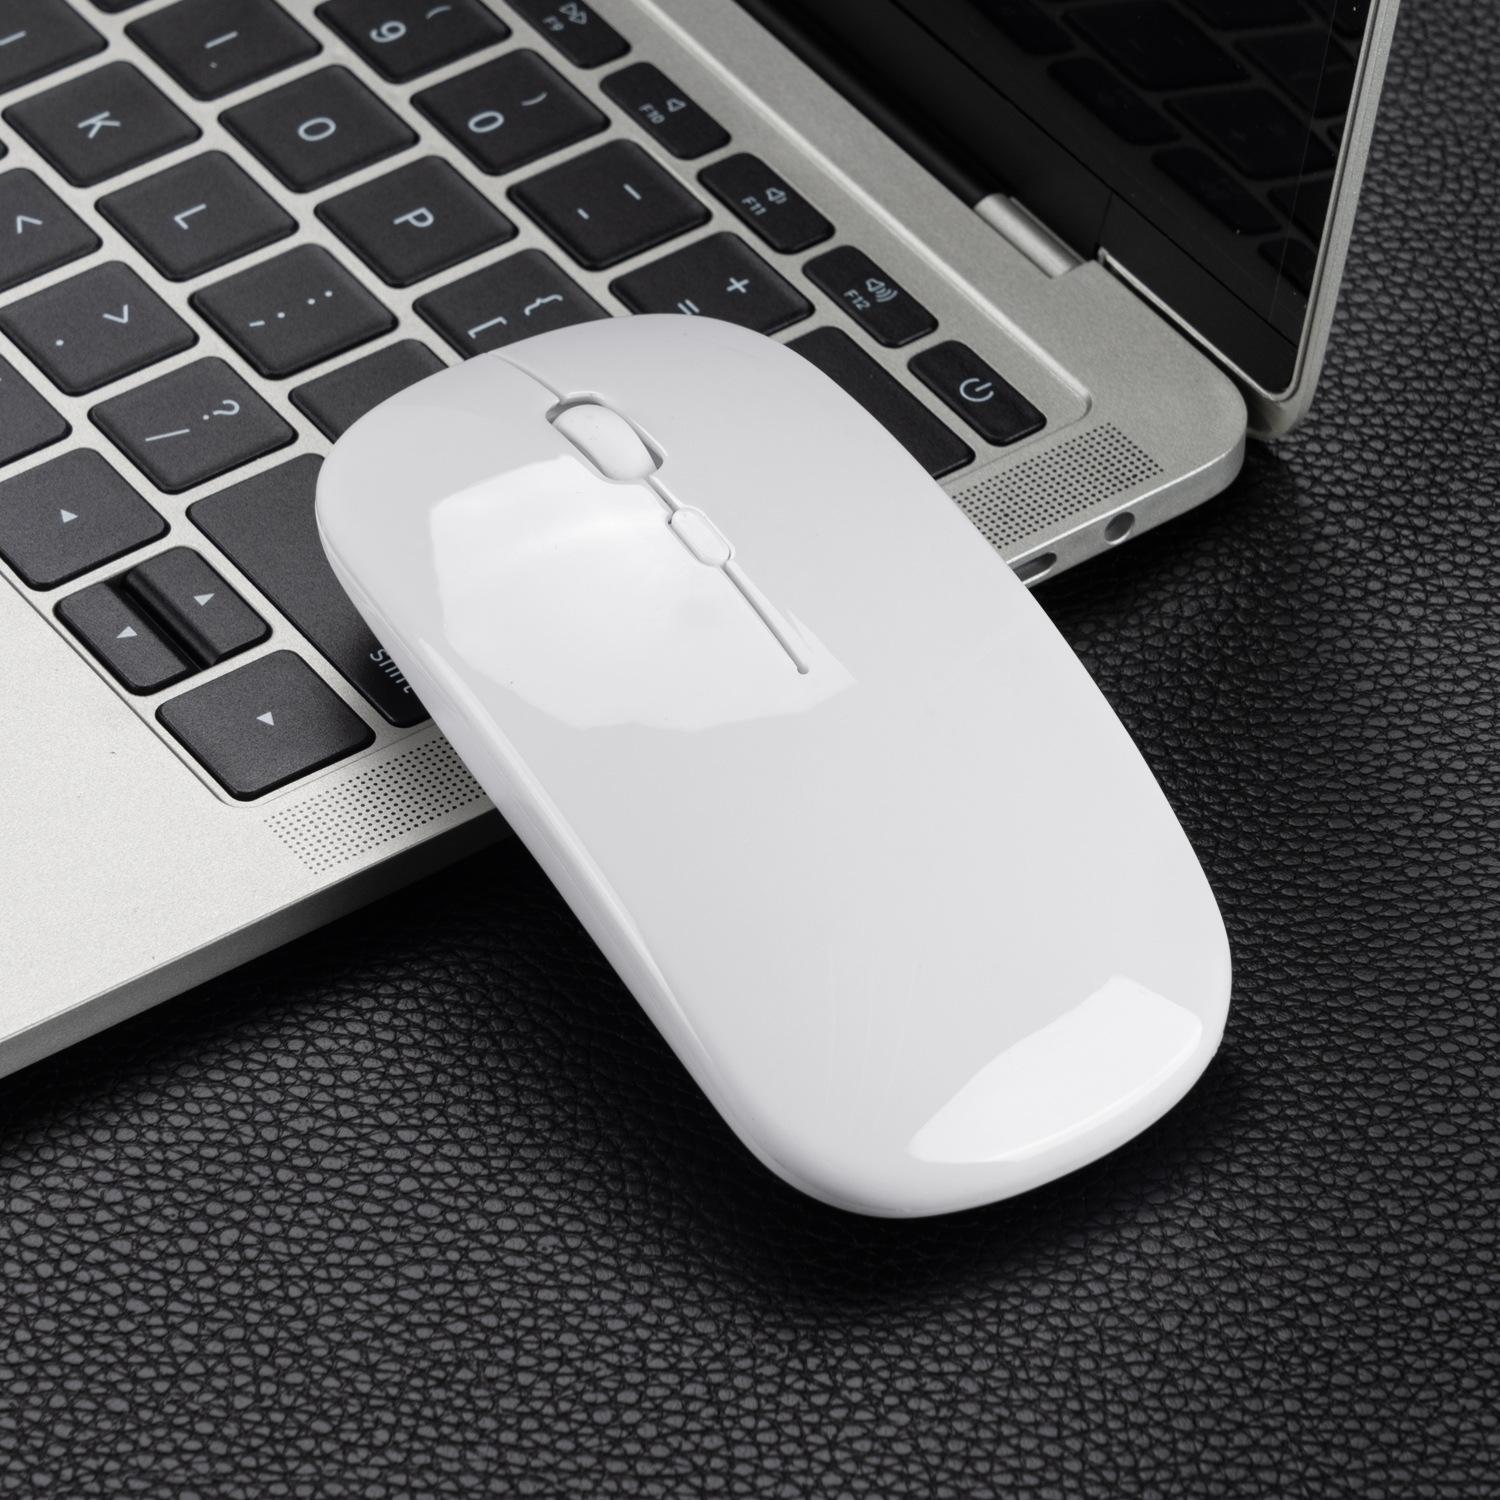 Мышь Apple Magic Mouse 2. Мышь 2.4 g Wireless Charging Mouse m700. 2.4GHZ Wireless Mouse Silent. Мышь беспроводная JBH E-wm01 (блютуз). Беззвучная мышь